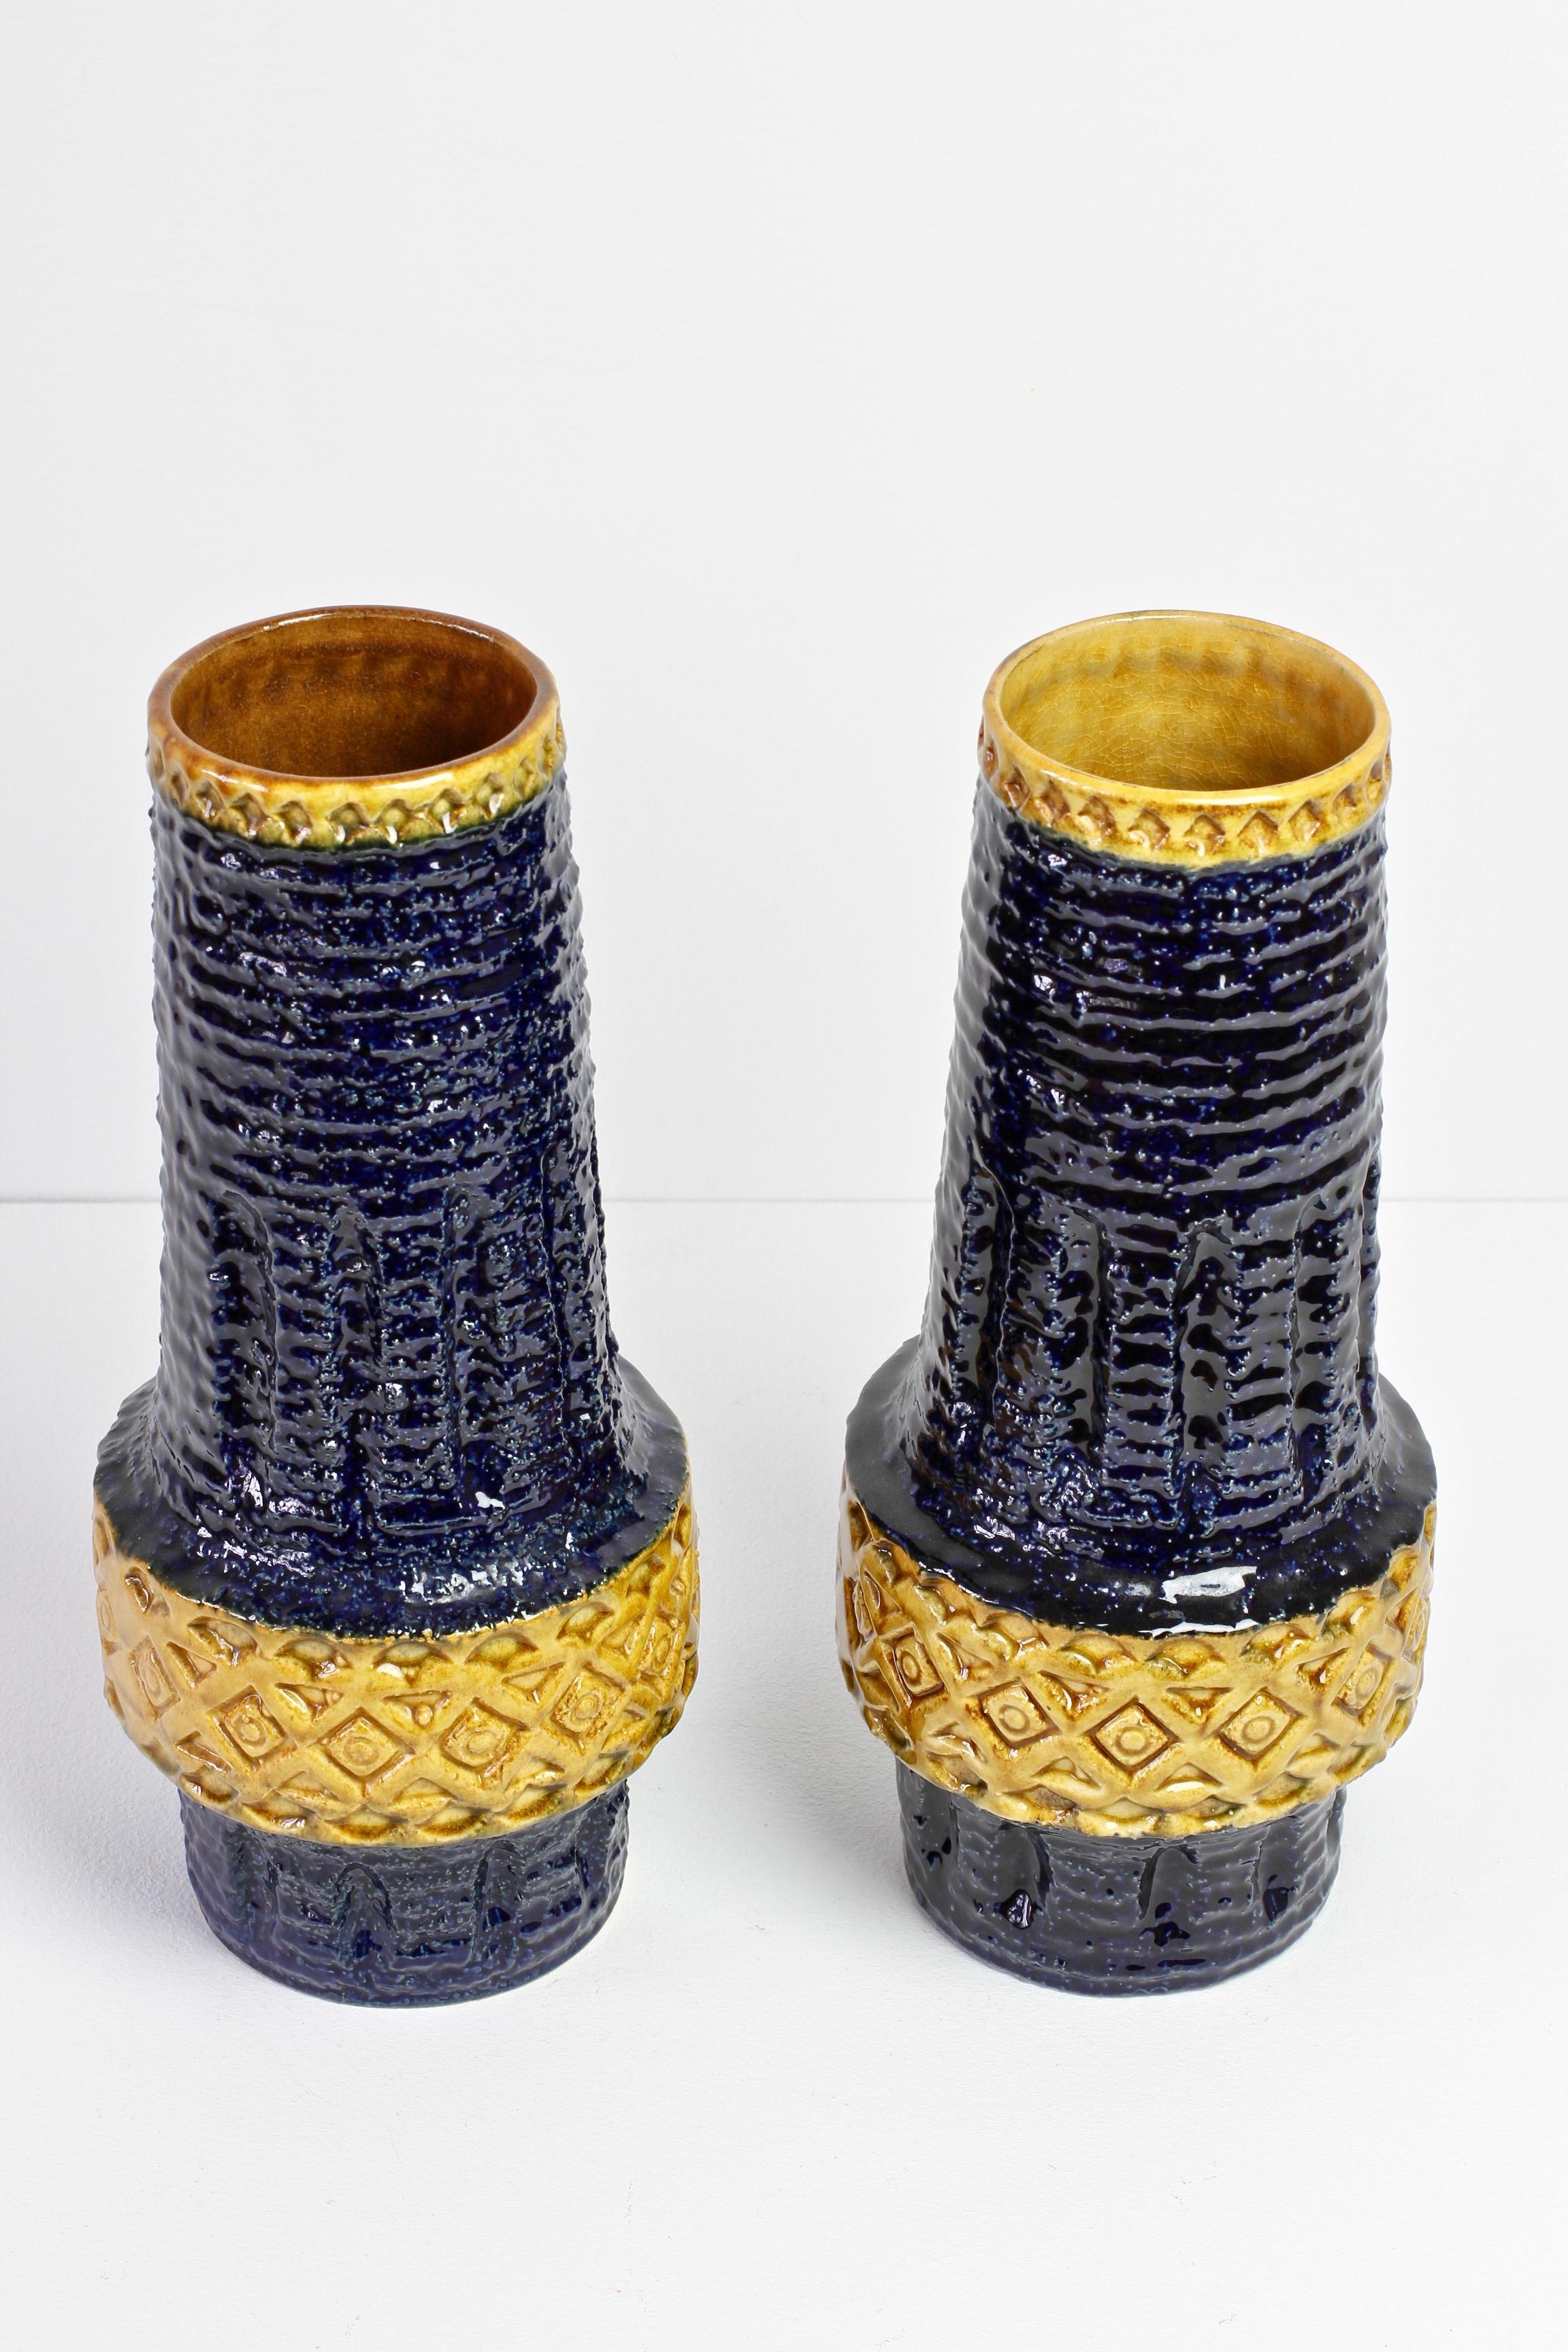 Ceramic Trio of Mid-Century West German Vases by Bay Keramik & Spara Pottery, circa 1970